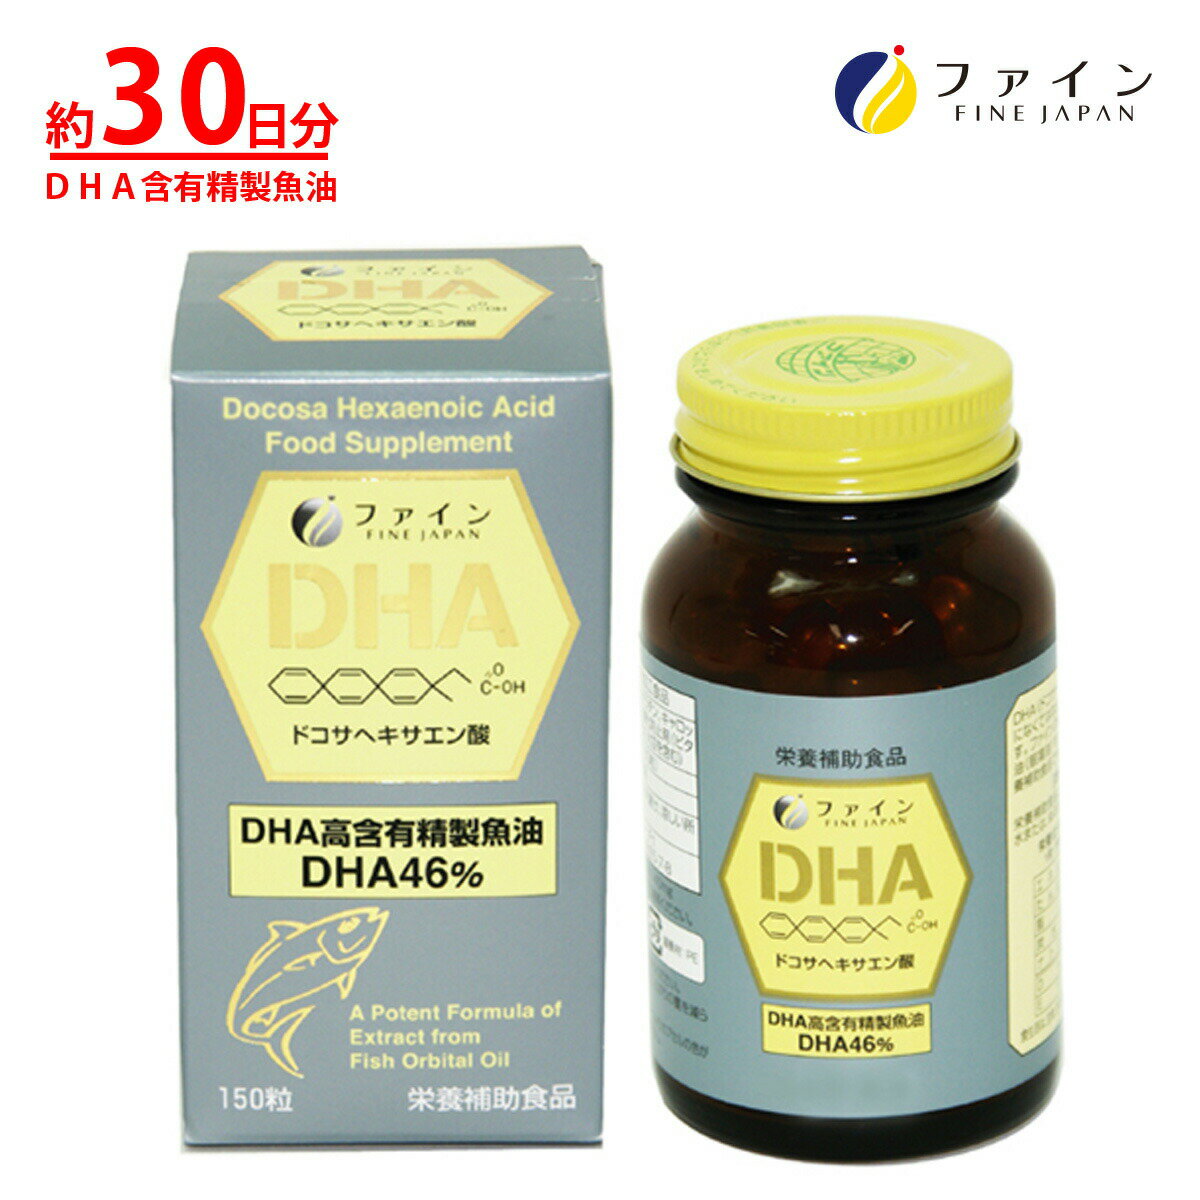 必須脂肪酸のDHAを豊富に含む、魚の目の後ろにある油(眼窩油)をソフトカプセルに包んだ栄養補助食品です。 DHAは、不飽和脂肪酸・α-リノレン酸の一種で、体内でつくることができない必須脂肪酸。 魚を食べる事が少ない方は、特に不足しがちな成分です。 商品名 ファイン DHA 150粒 内容量 58.5g(390mg×150粒) 栄養成分　1粒（被包材込み）当たり エネルギー 2.8kcal たんぱく質 10mg 脂質 0.26g 炭水化物 0.02g 食塩相当量 0.001g 規格成分　1粒（被包材込み）当たり DHA 112mg EPA 10mg 原材料 DHA含有精製魚油(国内製造)、ゼラチン／グリセリン、酸化防止剤（ビタミンE）、β-カロテン お召し上がり方 1日3〜5粒を目安に水または、ぬるま湯でお召し上がりください。 メーカー希望小売価格はメーカーカタログに基づいて掲載していますファイン DHA 150粒 必須脂肪酸のDHAを豊富に含む、魚の目の後ろにある油(眼窩油)をソフトカプセルに包んだ栄養補助食品です。 DHAは、不飽和脂肪酸・α-リノレン酸の一種で、体内でつくることができない必須脂肪酸。 魚を食べる事が少ない方は、特に不足しがちな成分です。 栄養成分 1粒（被包材込み）当たり エネルギー 2.8kcal たんぱく質 0.1g 脂質 0.26g 炭水化物 0.02g 食塩相当量 0.001g 規格成分 1粒（被包材込み）当たり DHA 112mg EPA 10mg お召し上がり方 1日3〜5粒を目安に水または、ぬるま湯でお召し上がりください。 内容量 58.5g(390mg×150粒) 原材料名DHA含有精製魚油(国内製造)、ゼラチン／グリセリン、酸化防止剤（ビタミンE）、β-カロテン ご注意 開封後はお早めにお召し上がりください。 体質に合わないと思われる時は、お召し上がりの量を減らすか、または止めてください。 製造ロットにより色やにおいに違いが生じる場合がありますが、品質上、問題ありません。 株式会社ファイン TEL：0120-100-907（通信販売部） 製造：株式会社ファイン　区分：日本製健康食品